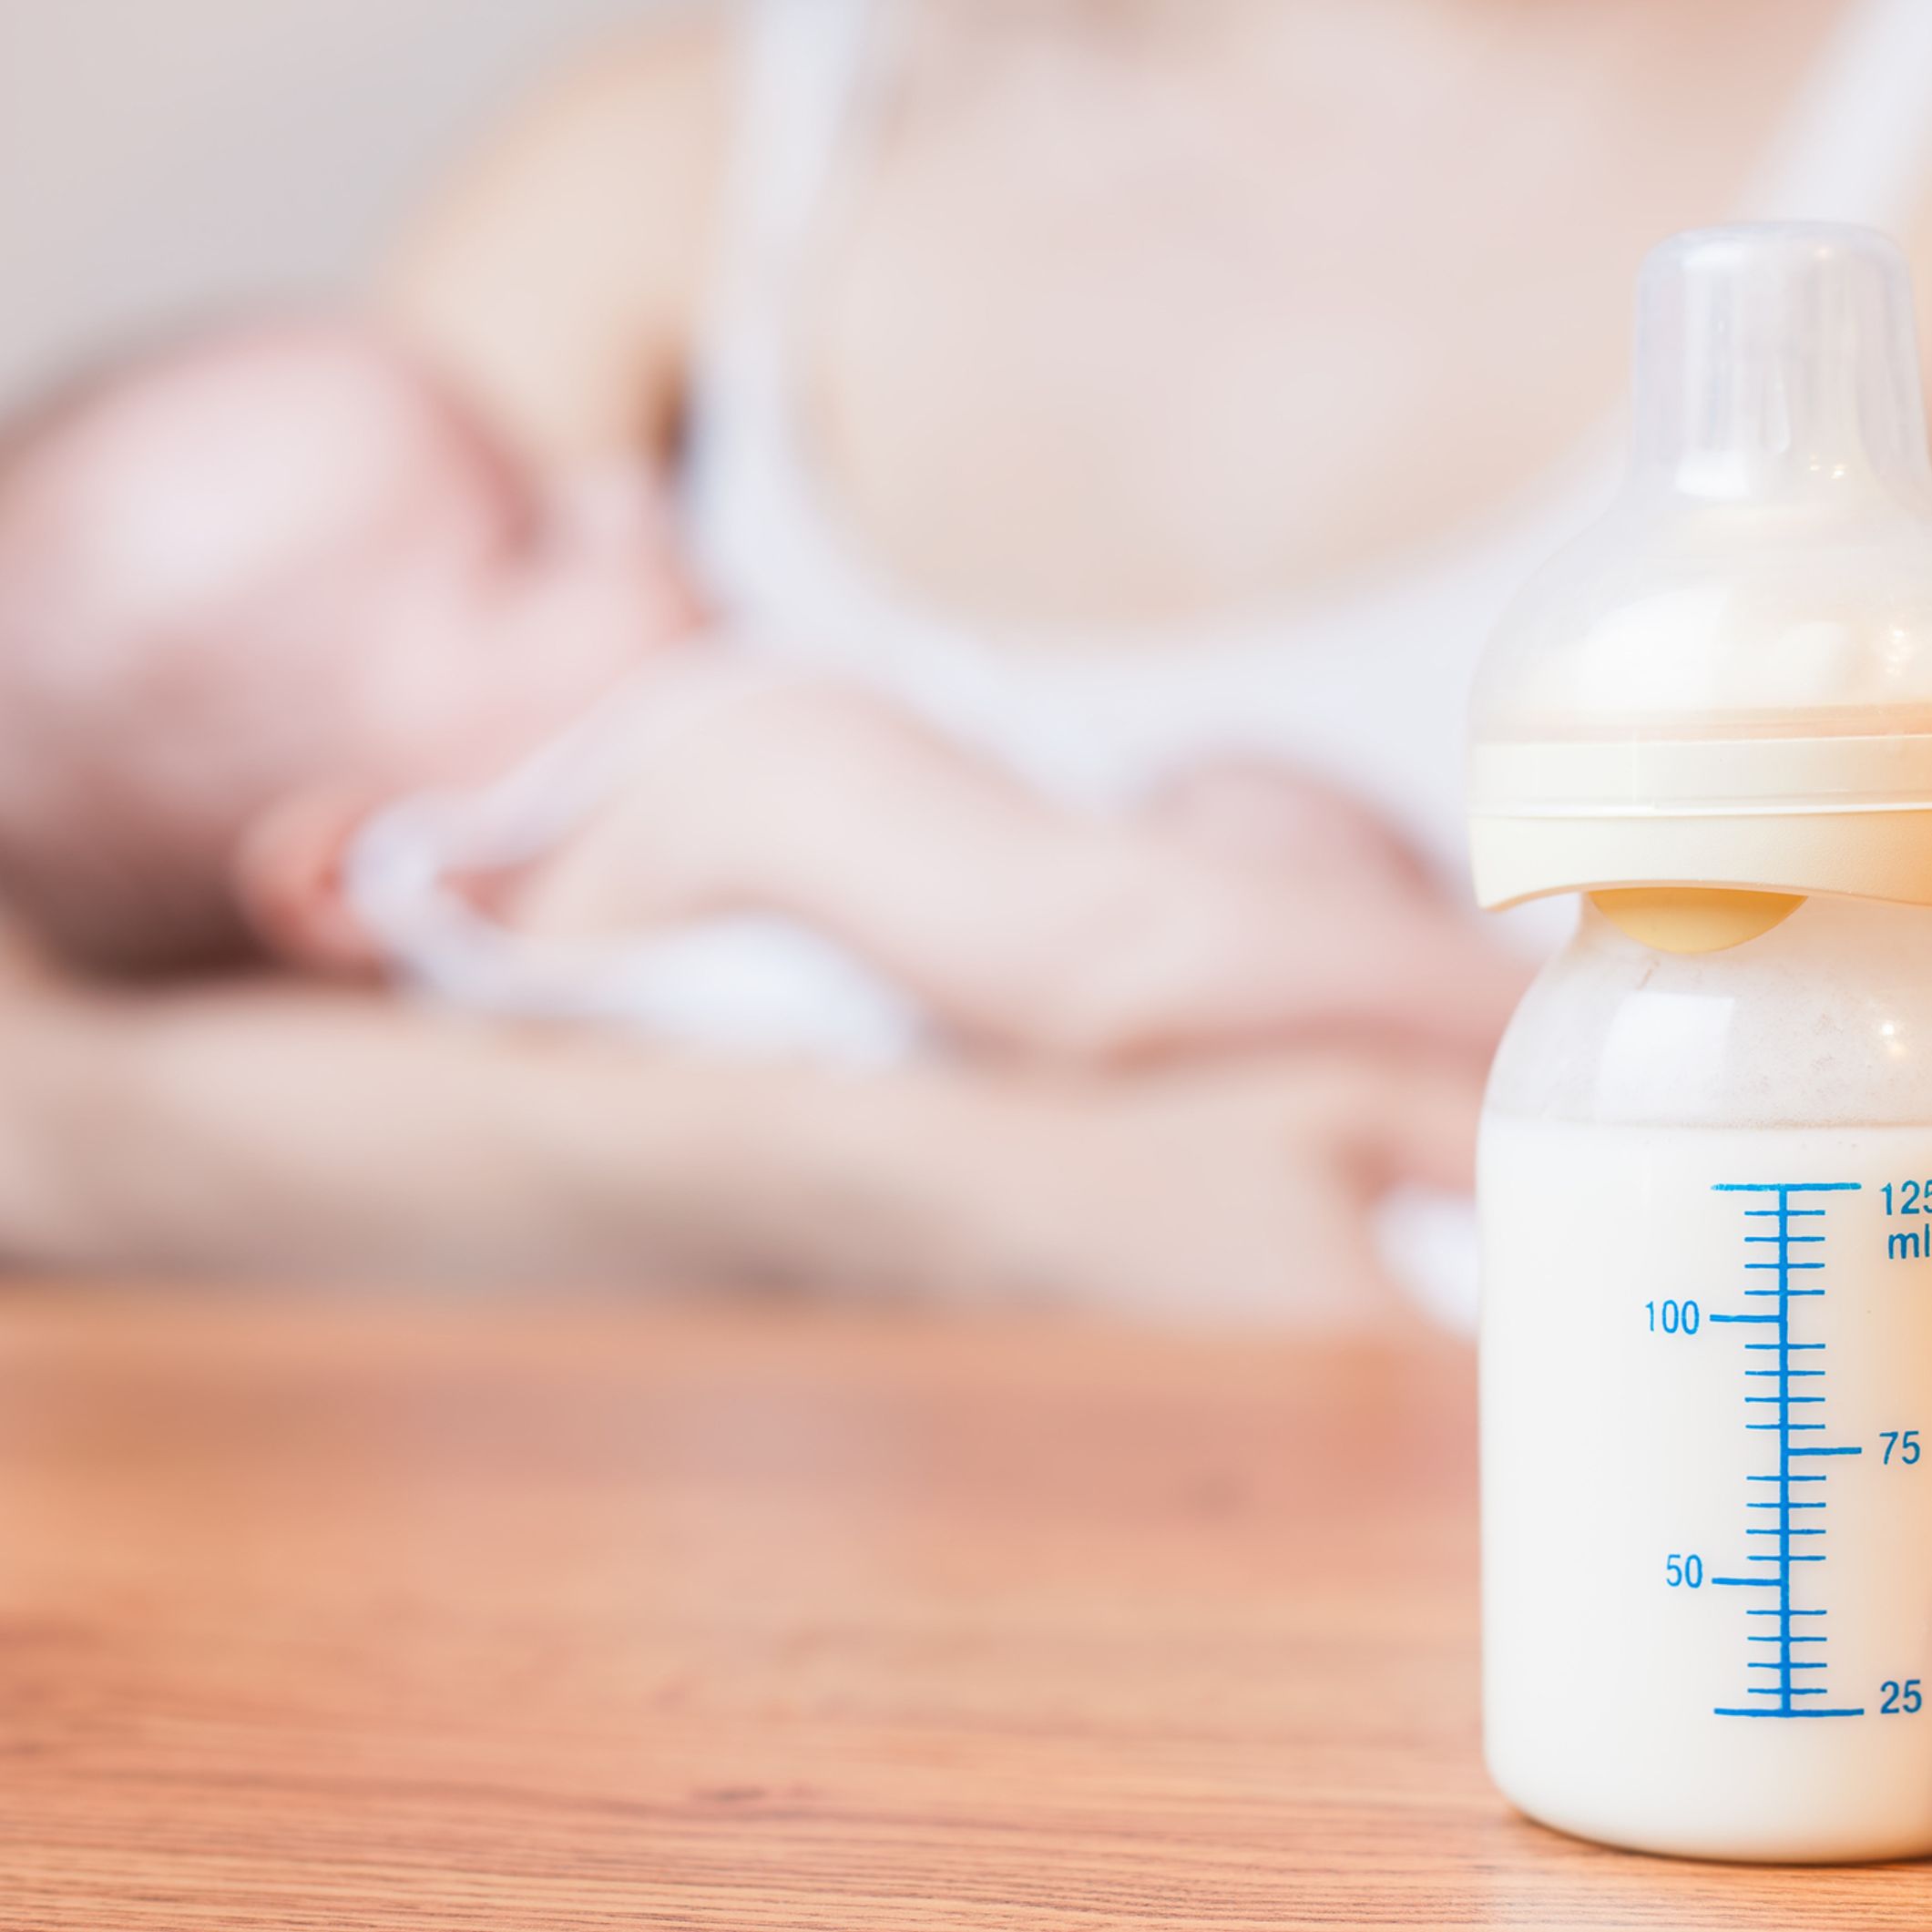 Peut-on donner des laits végétaux aux bébés et enfants? - Enfant végé